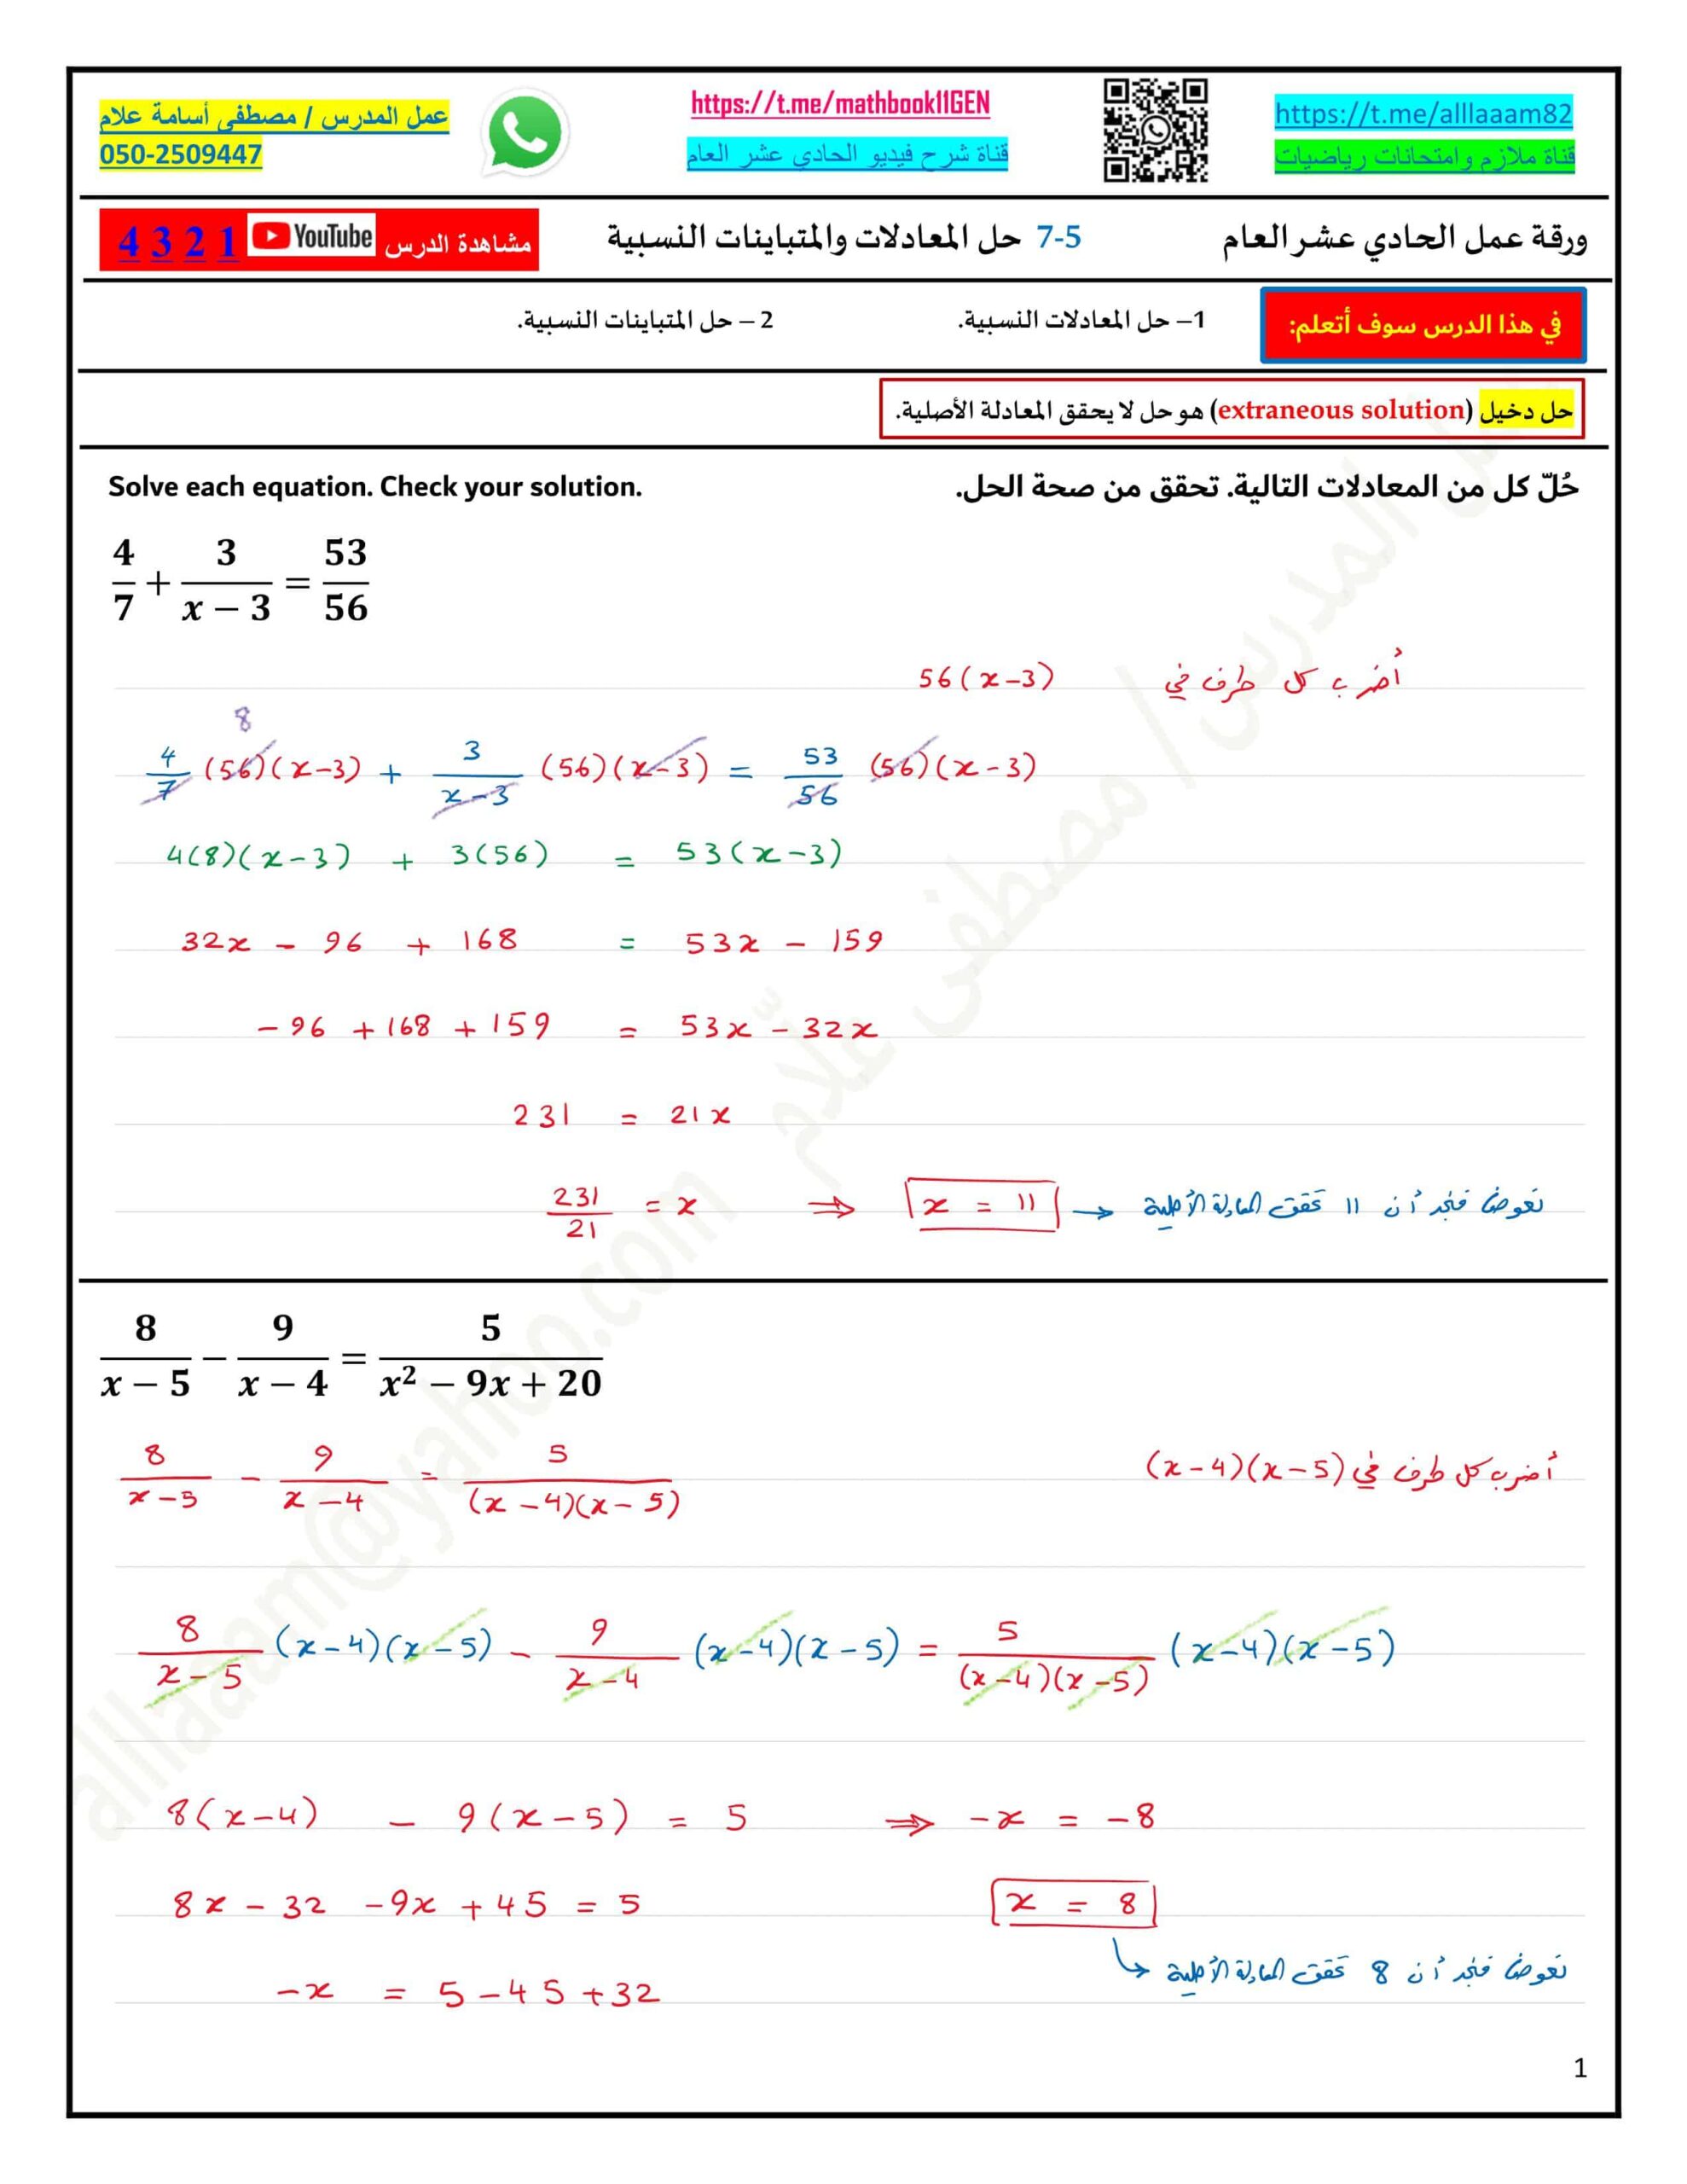 حل ورقة عمل حل المعادلات والمتباينات النسبية الرياضيات المتكاملة الصف الحادي عشر عام